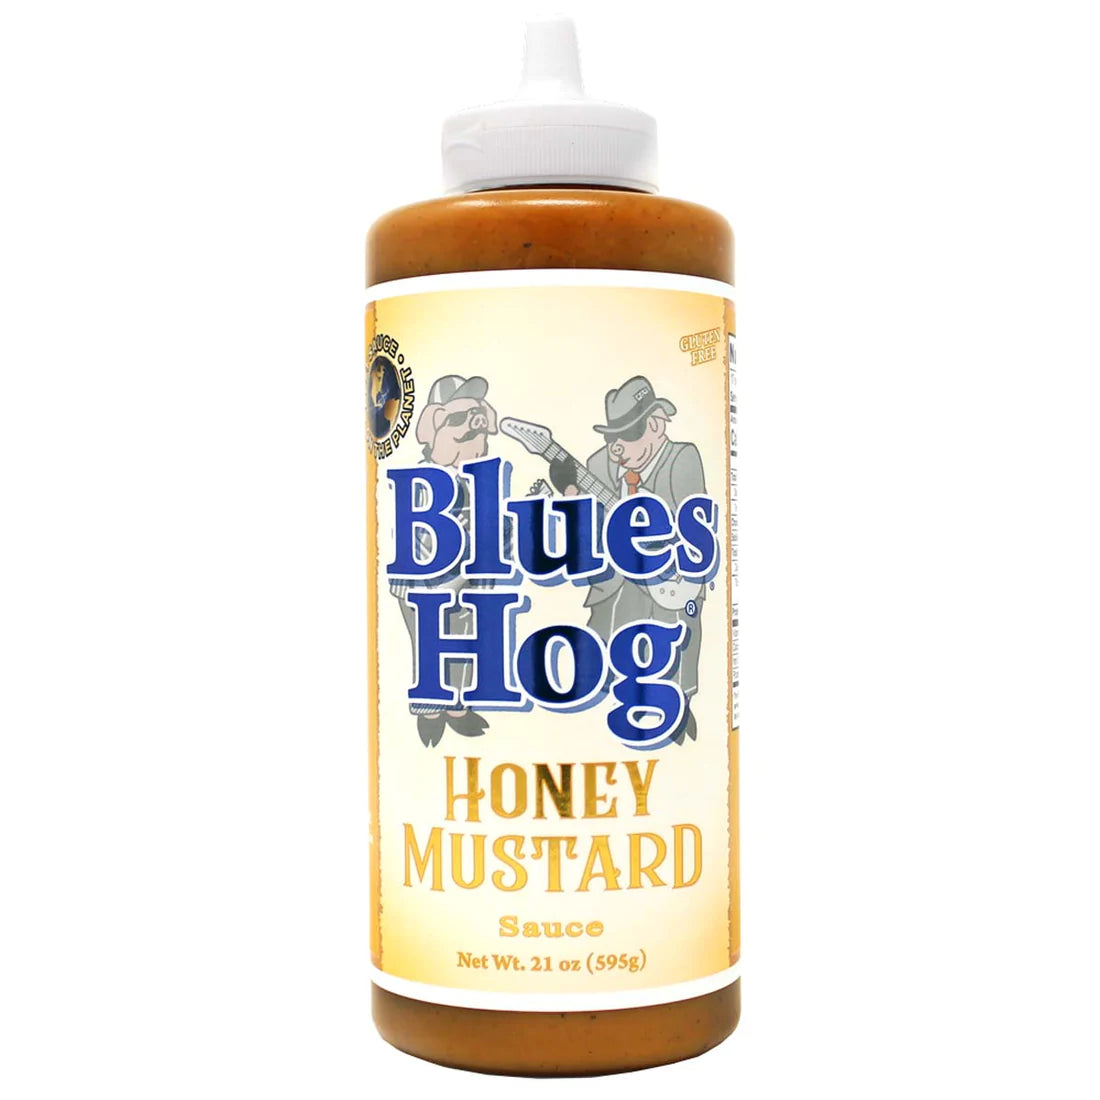 BLUES HOG HONEY MUSTARD